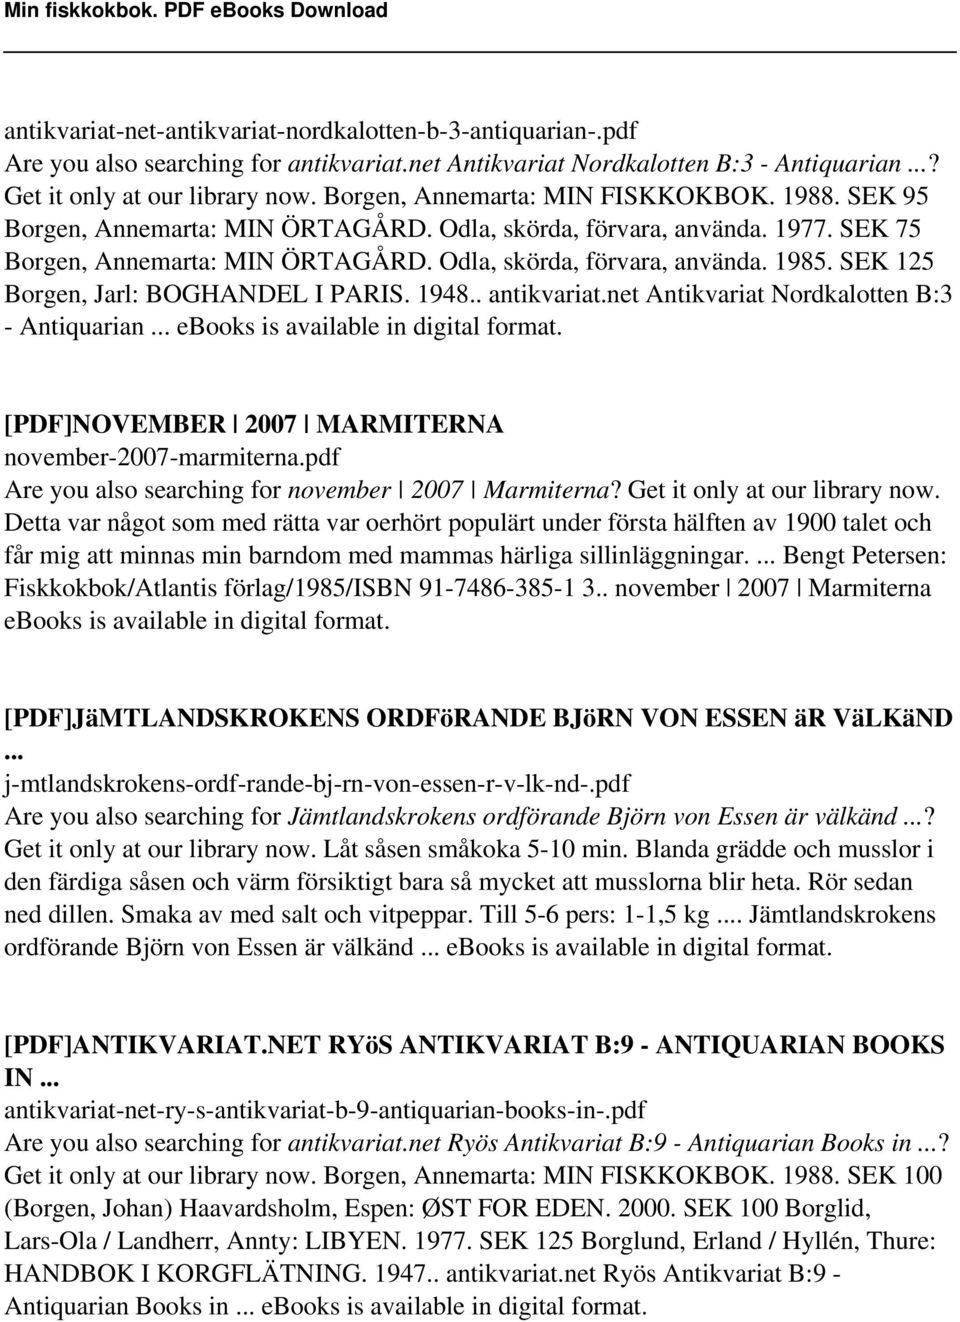 SEK 125 Borgen, Jarl: BOGHANDEL I PARIS. 1948.. antikvariat.net Antikvariat Nordkalotten B:3 - Antiquarian... ebooks is [PDF]NOVEMBER 2007 MARMITERNA november-2007-marmiterna.